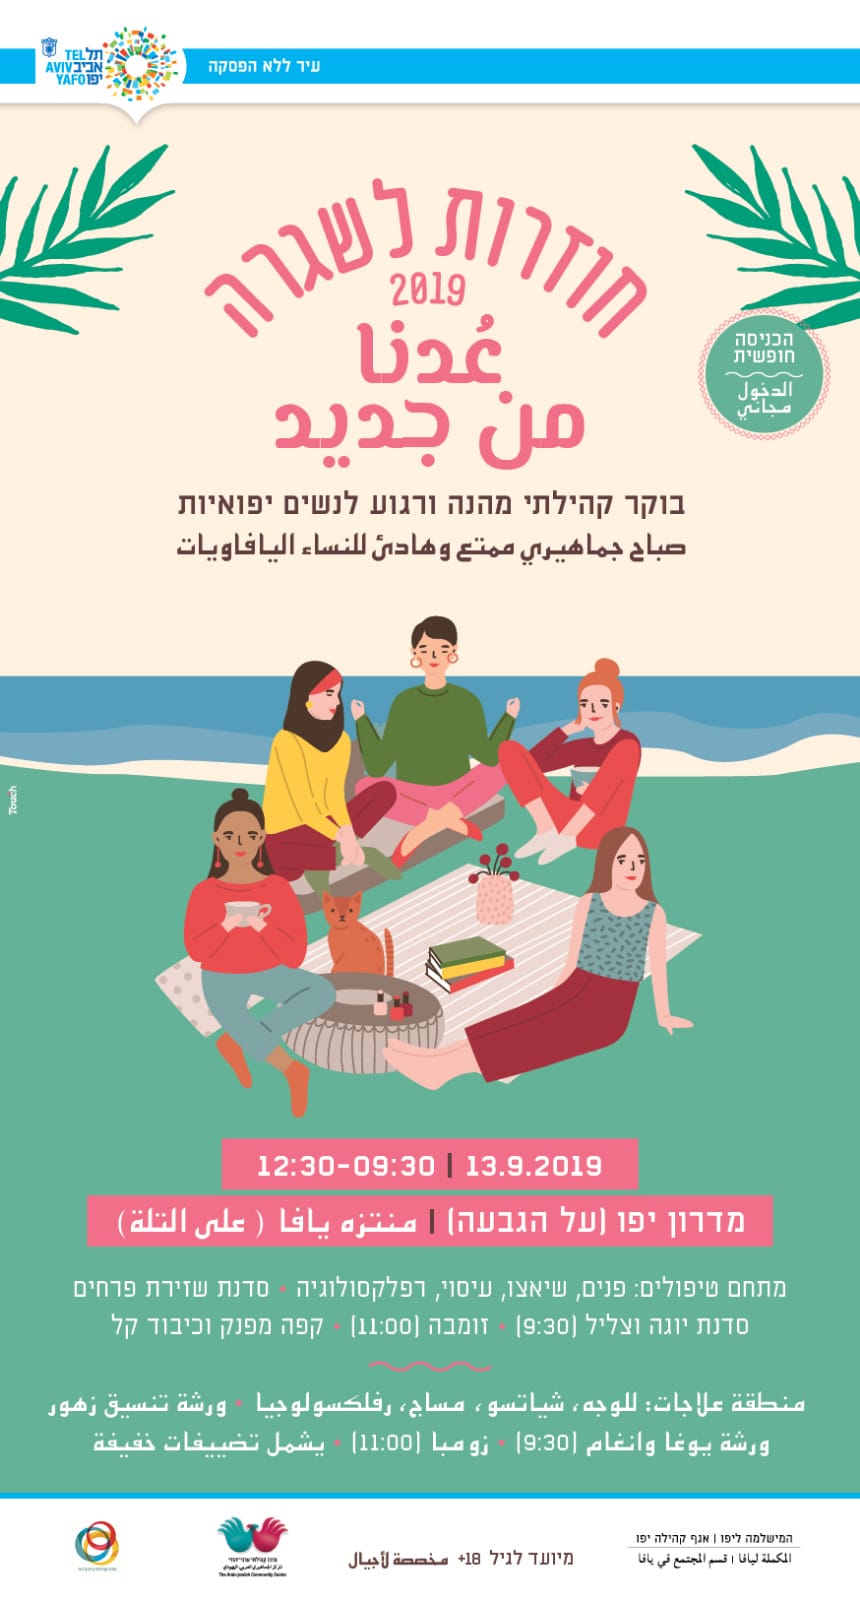  الجمعة 13.9 - صباح جماهيري ممتع للنساء اليافاويات في متنزه يافا 